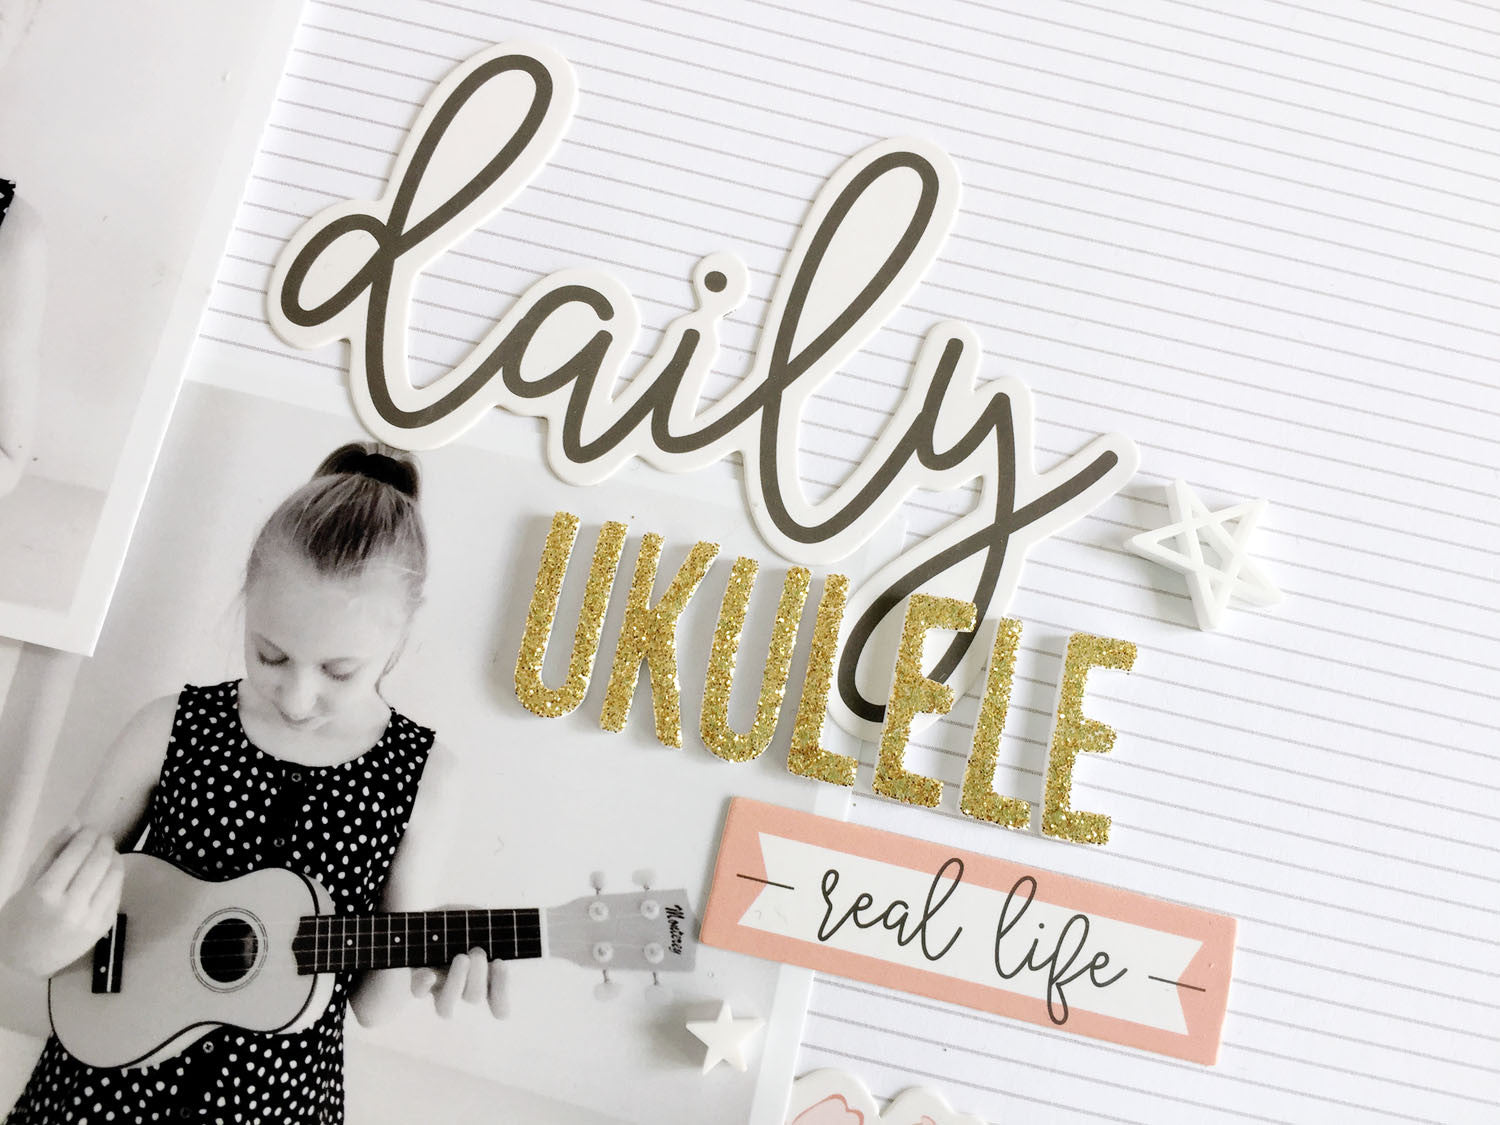 Daily Ukulele by Sheree Forcier |@FelicityJane